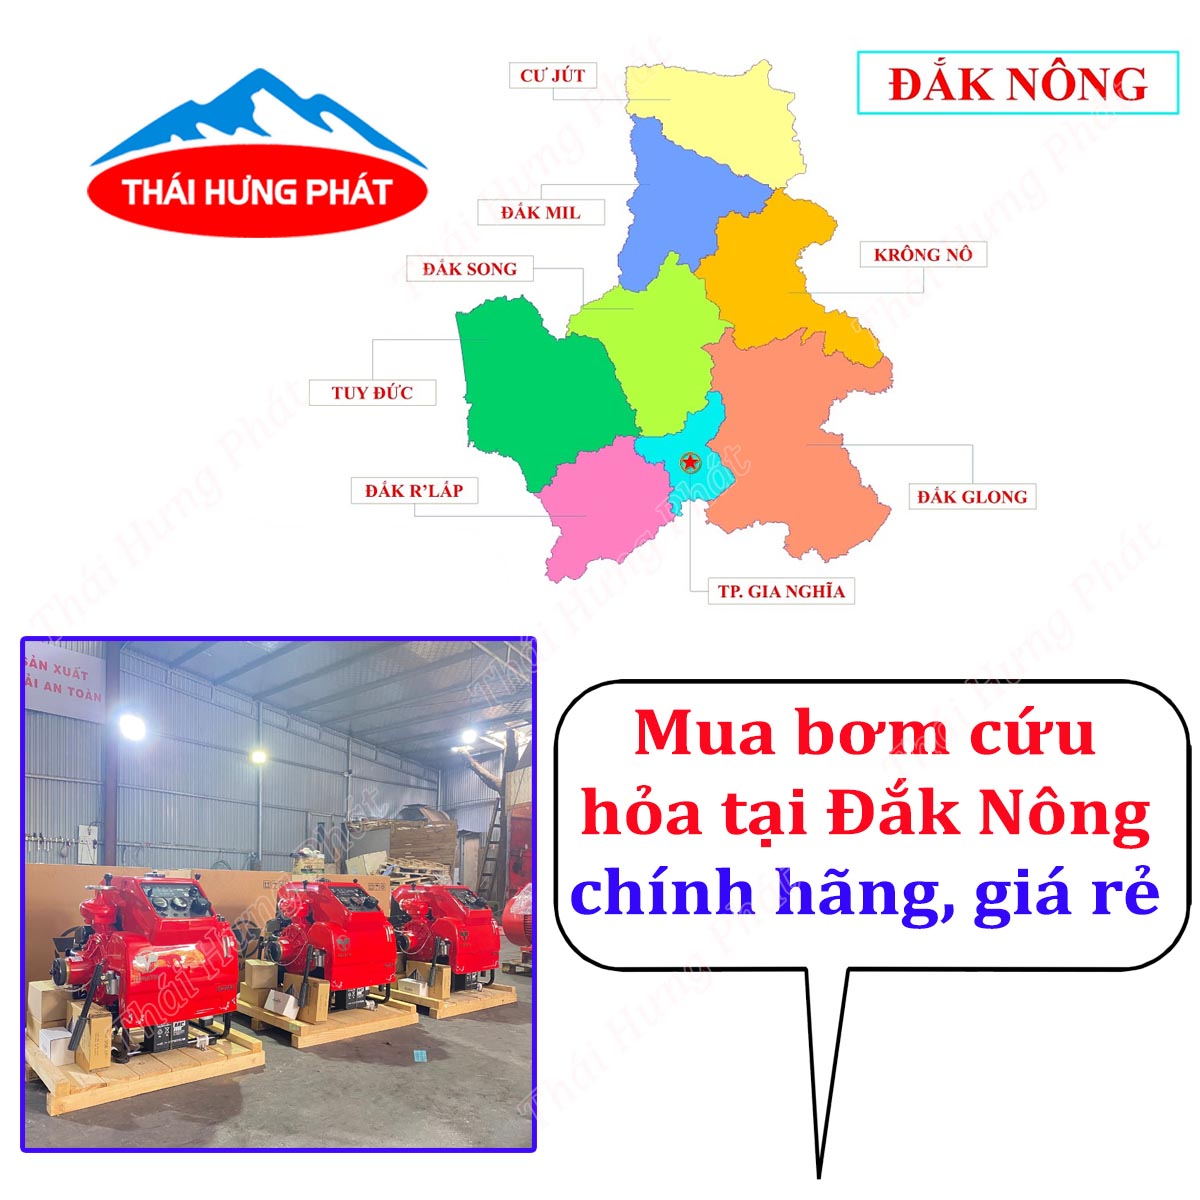 Mua máy bơm PCCC tại Đắk Nông chính hãng ở đâu?